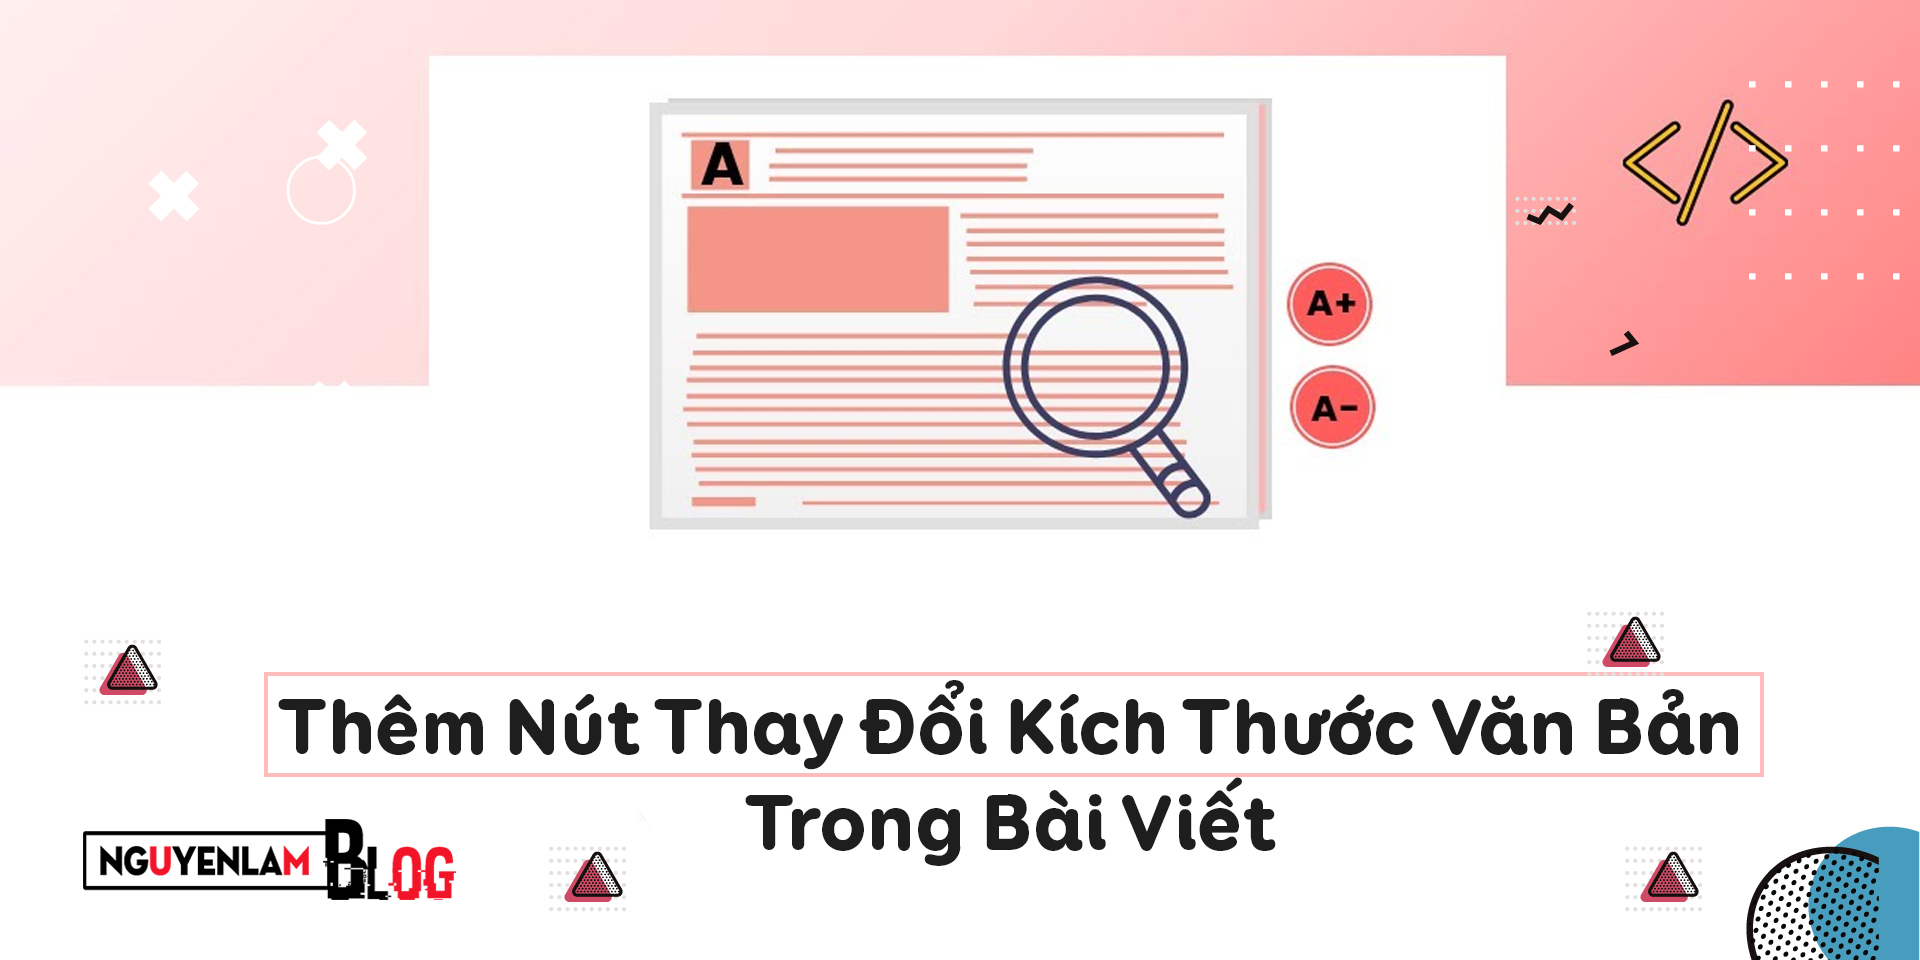 Nguyễn Lâm Blog - Thêm Nút Thay Đổi Kích Thước Văn Bản Trong Bài Viết Trên Blogger